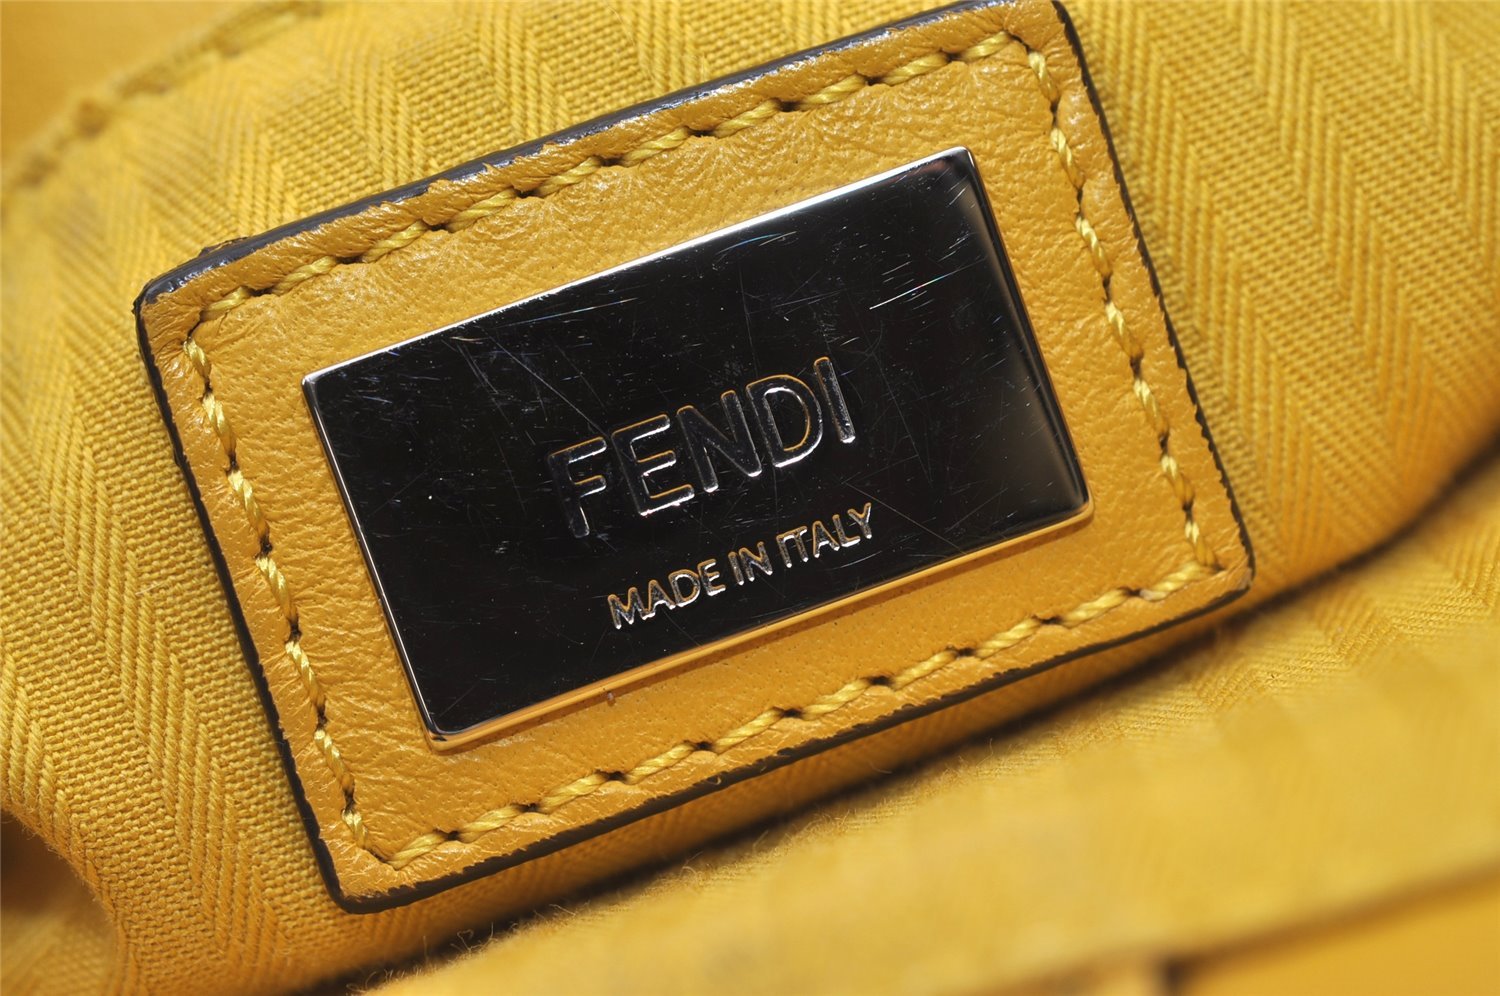 Authentic FENDI Vintage 2JOURS Leather 2Way Shoulder Hand Bag Purse Yellow 8724J